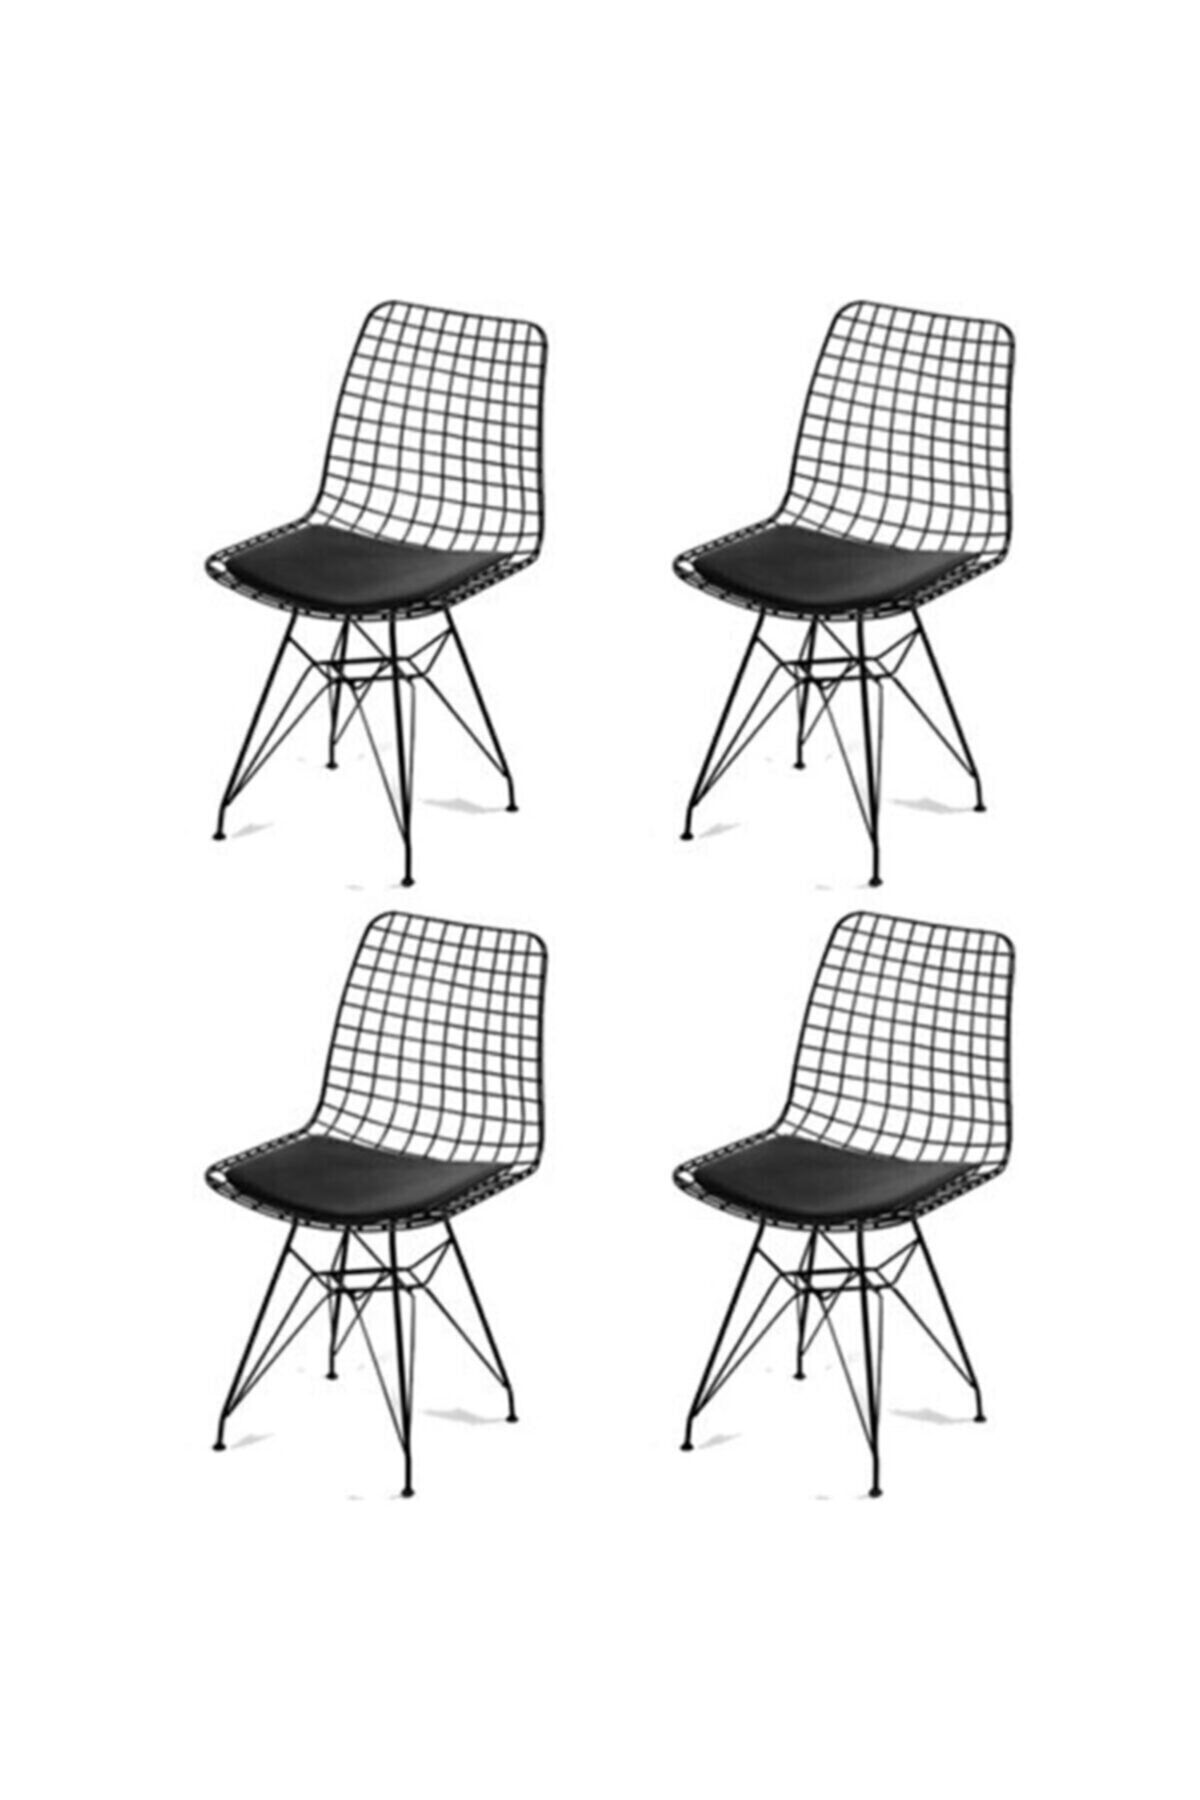 Genel Markalar 4'lü Siyah Sandalye, Ofis Sandalyesi, Mutfak Sandalyesi, Bahçe Sandalyesi, Kafe Sandalyesi